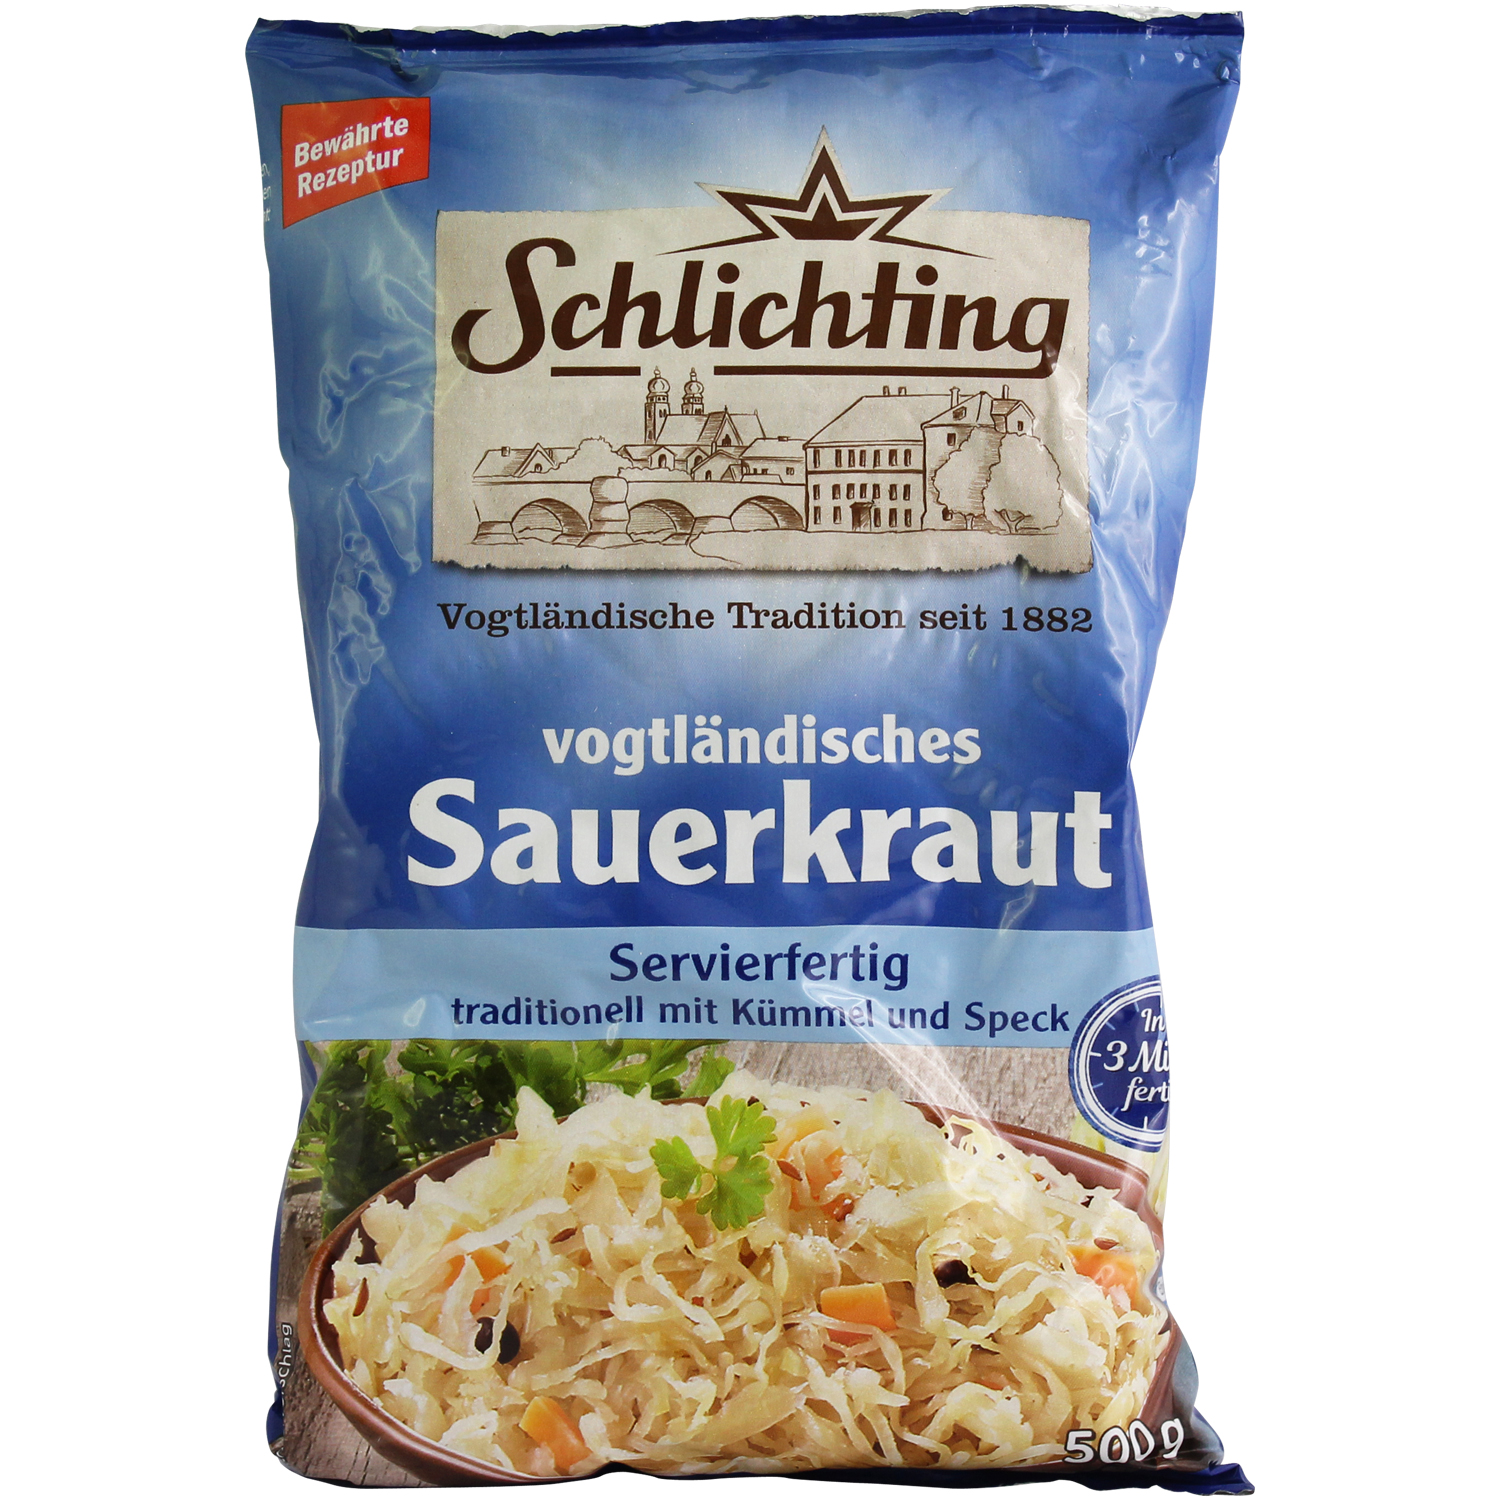 Schlichting vogtländisches Sauerkraut 500g 